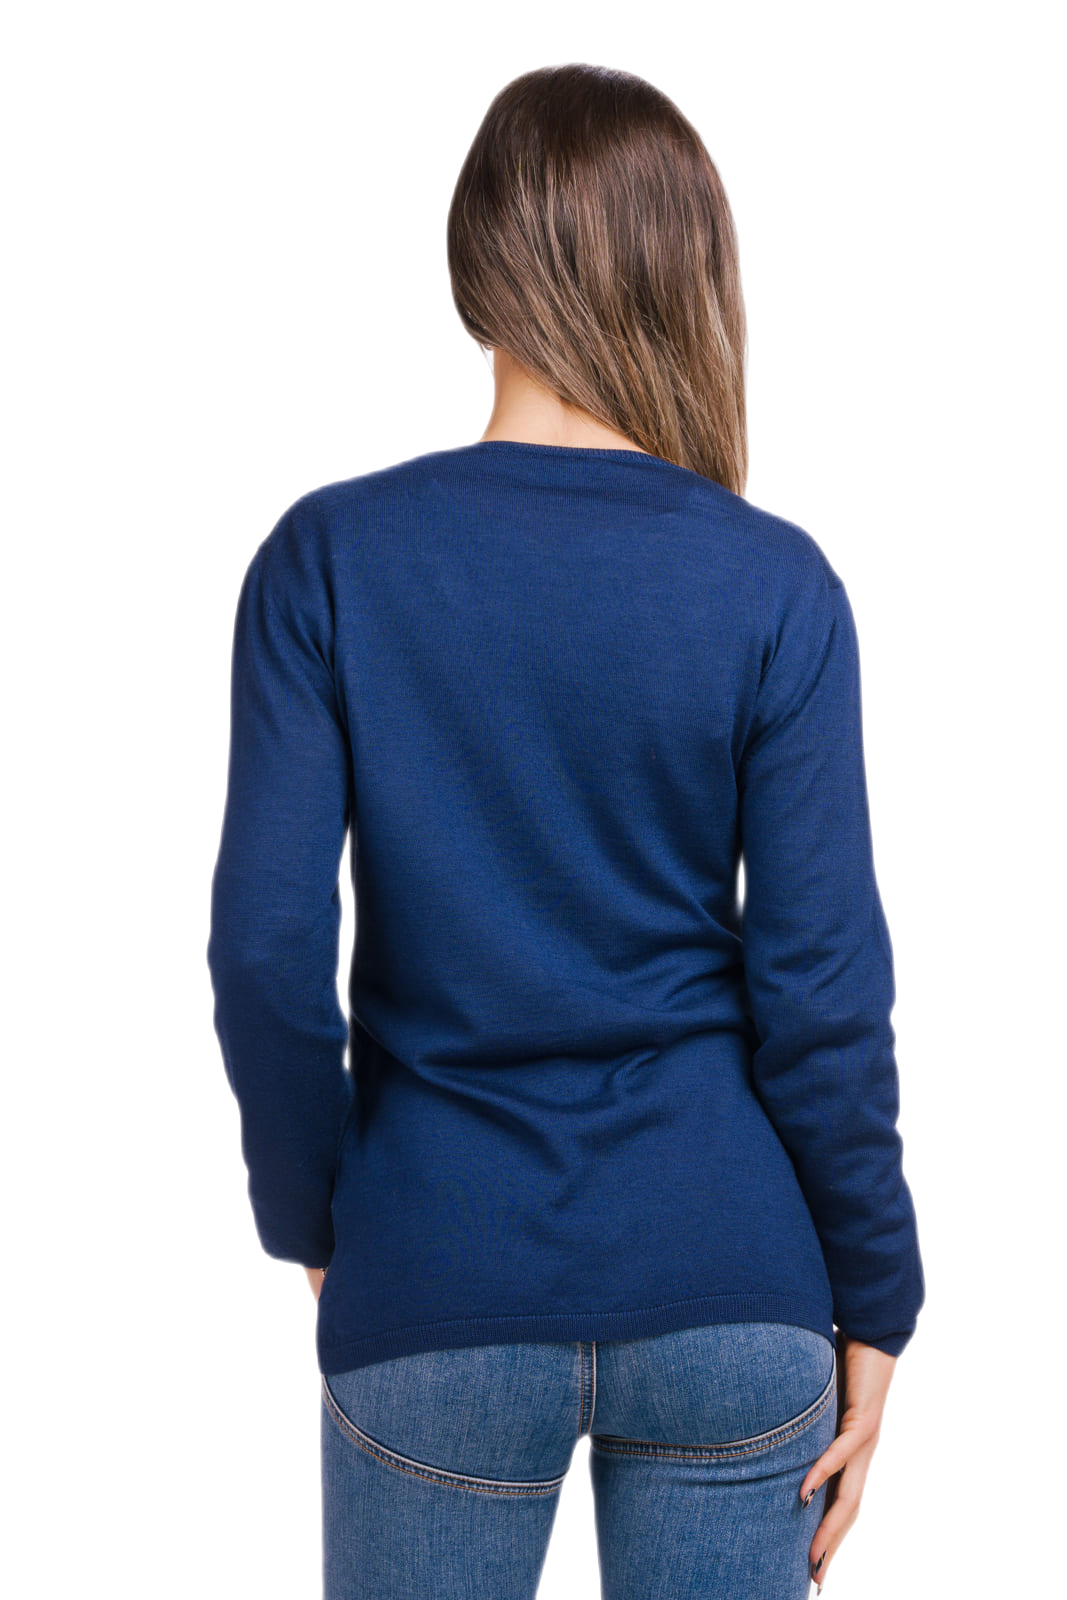 retro cardigan donna aderente in lana e seta colore blu